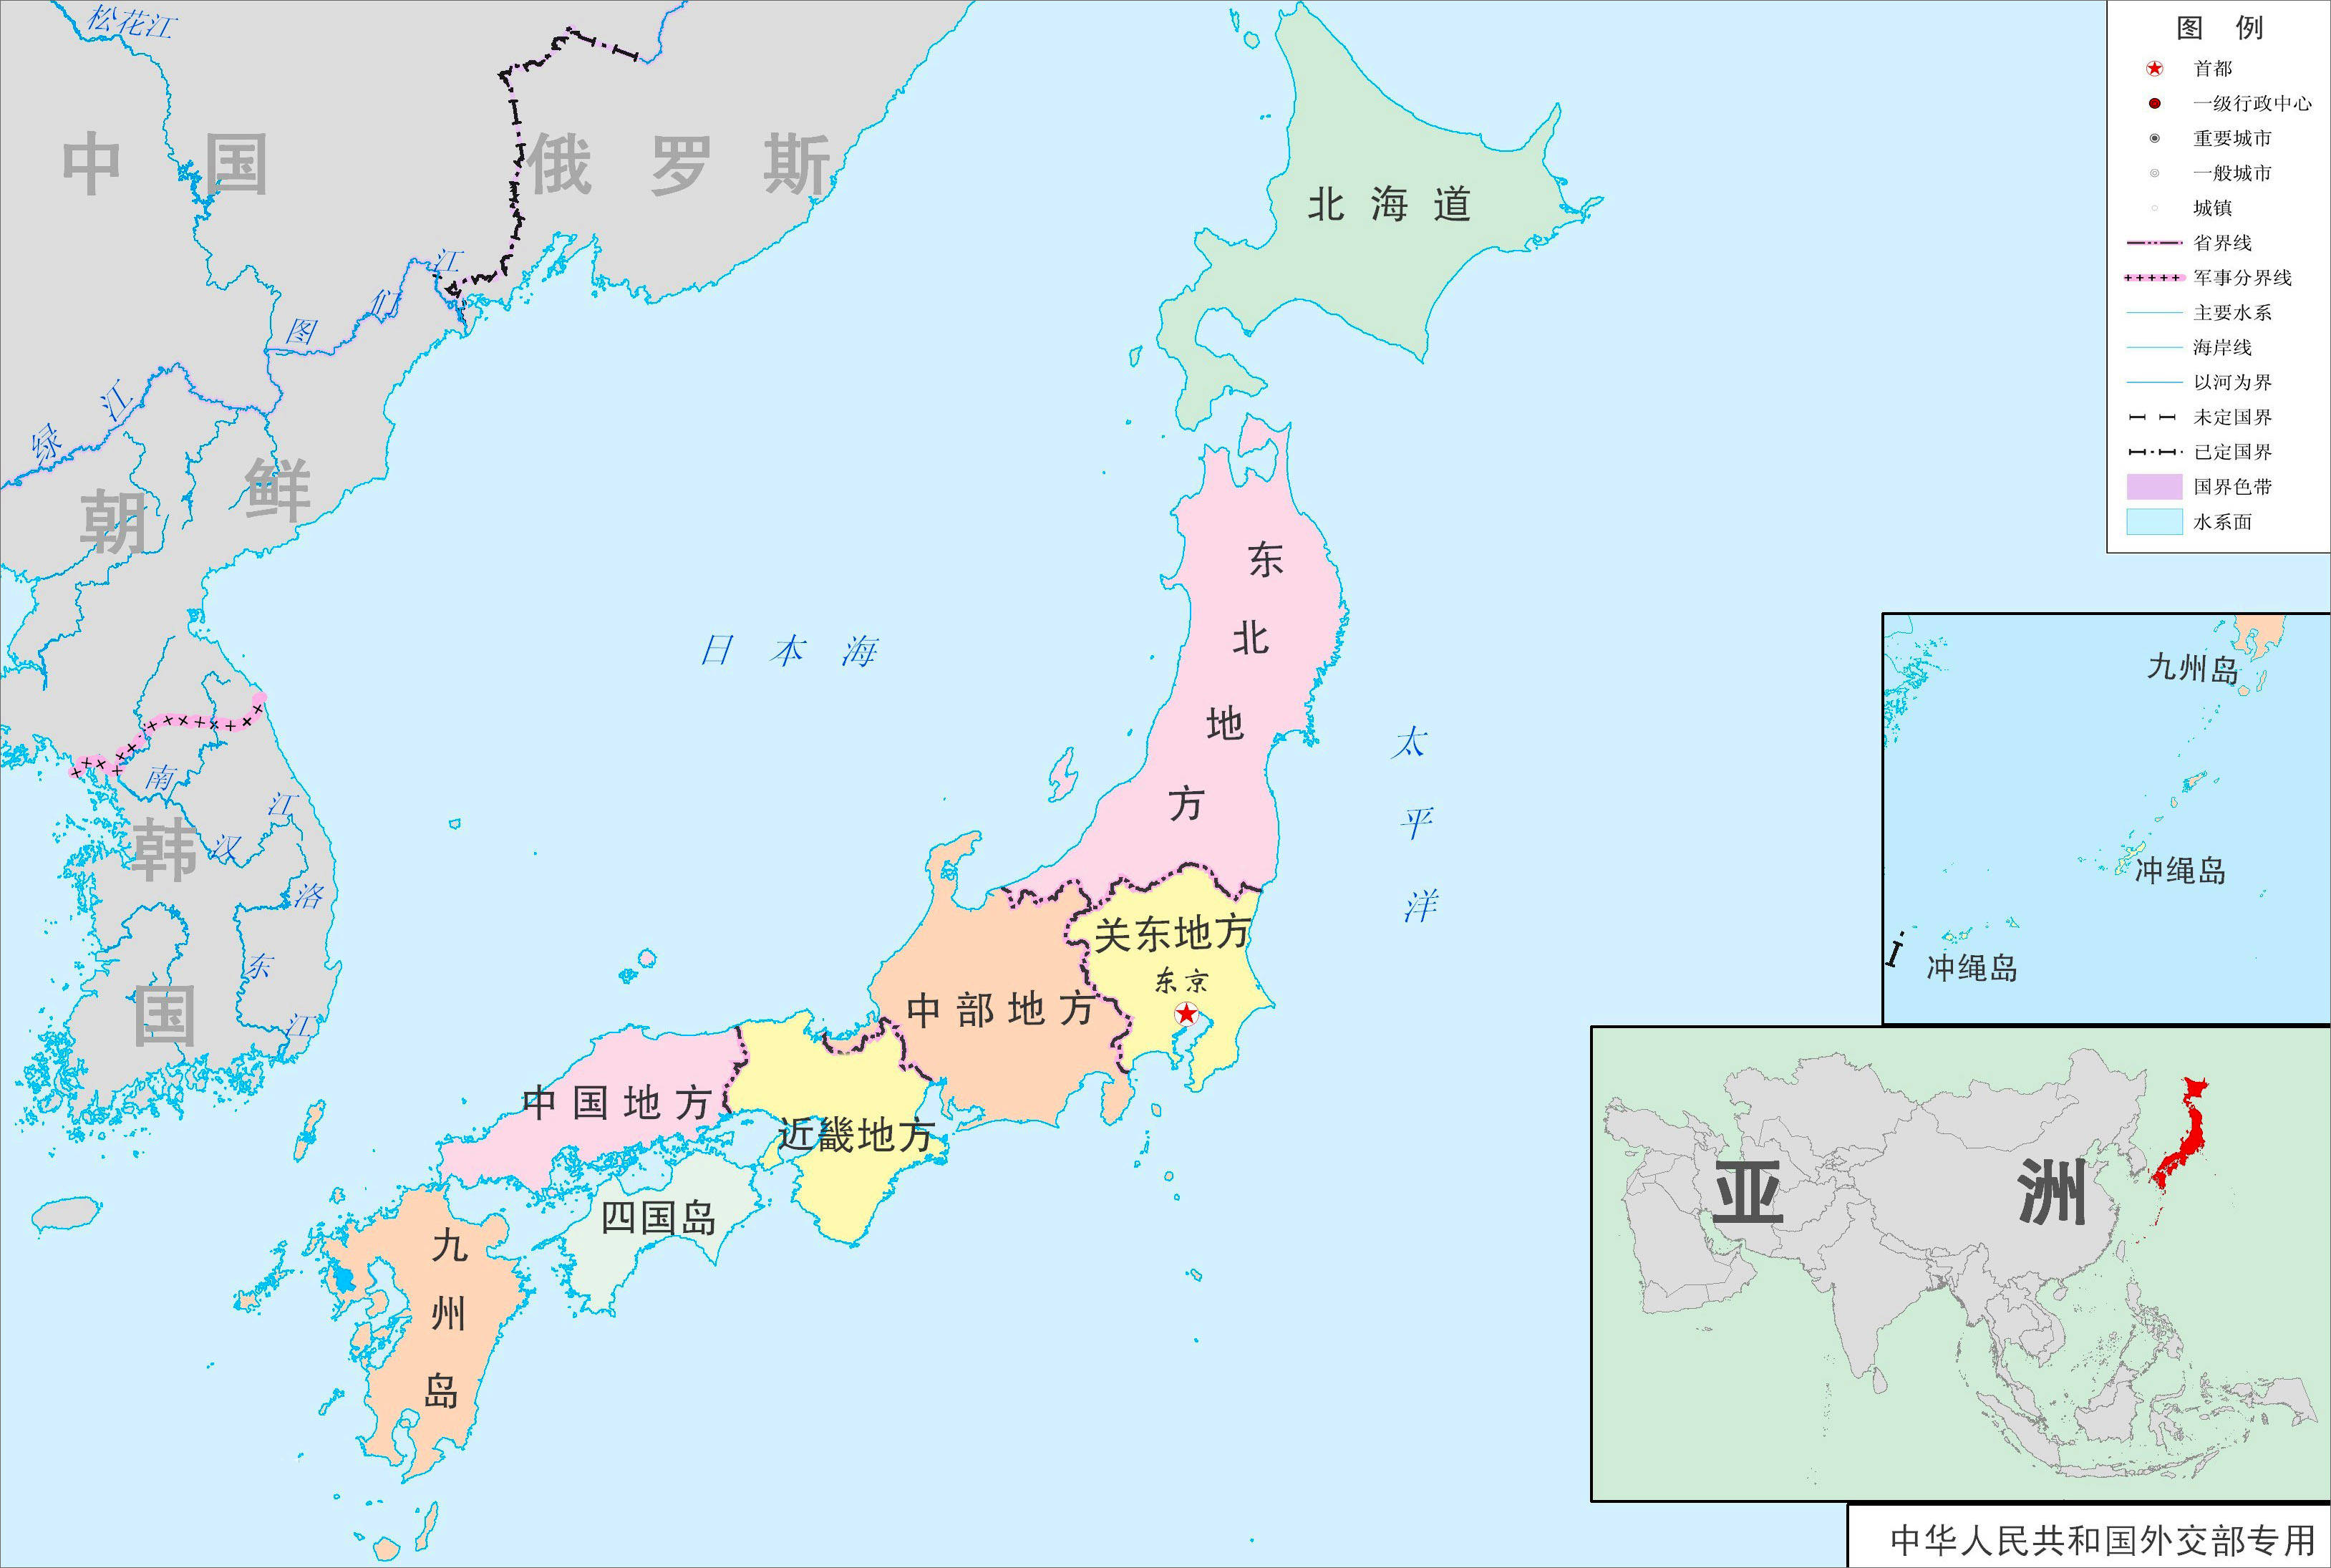 59%,在2020年,这个东京都会区的总人口约为3600多万,几乎占了日本国总